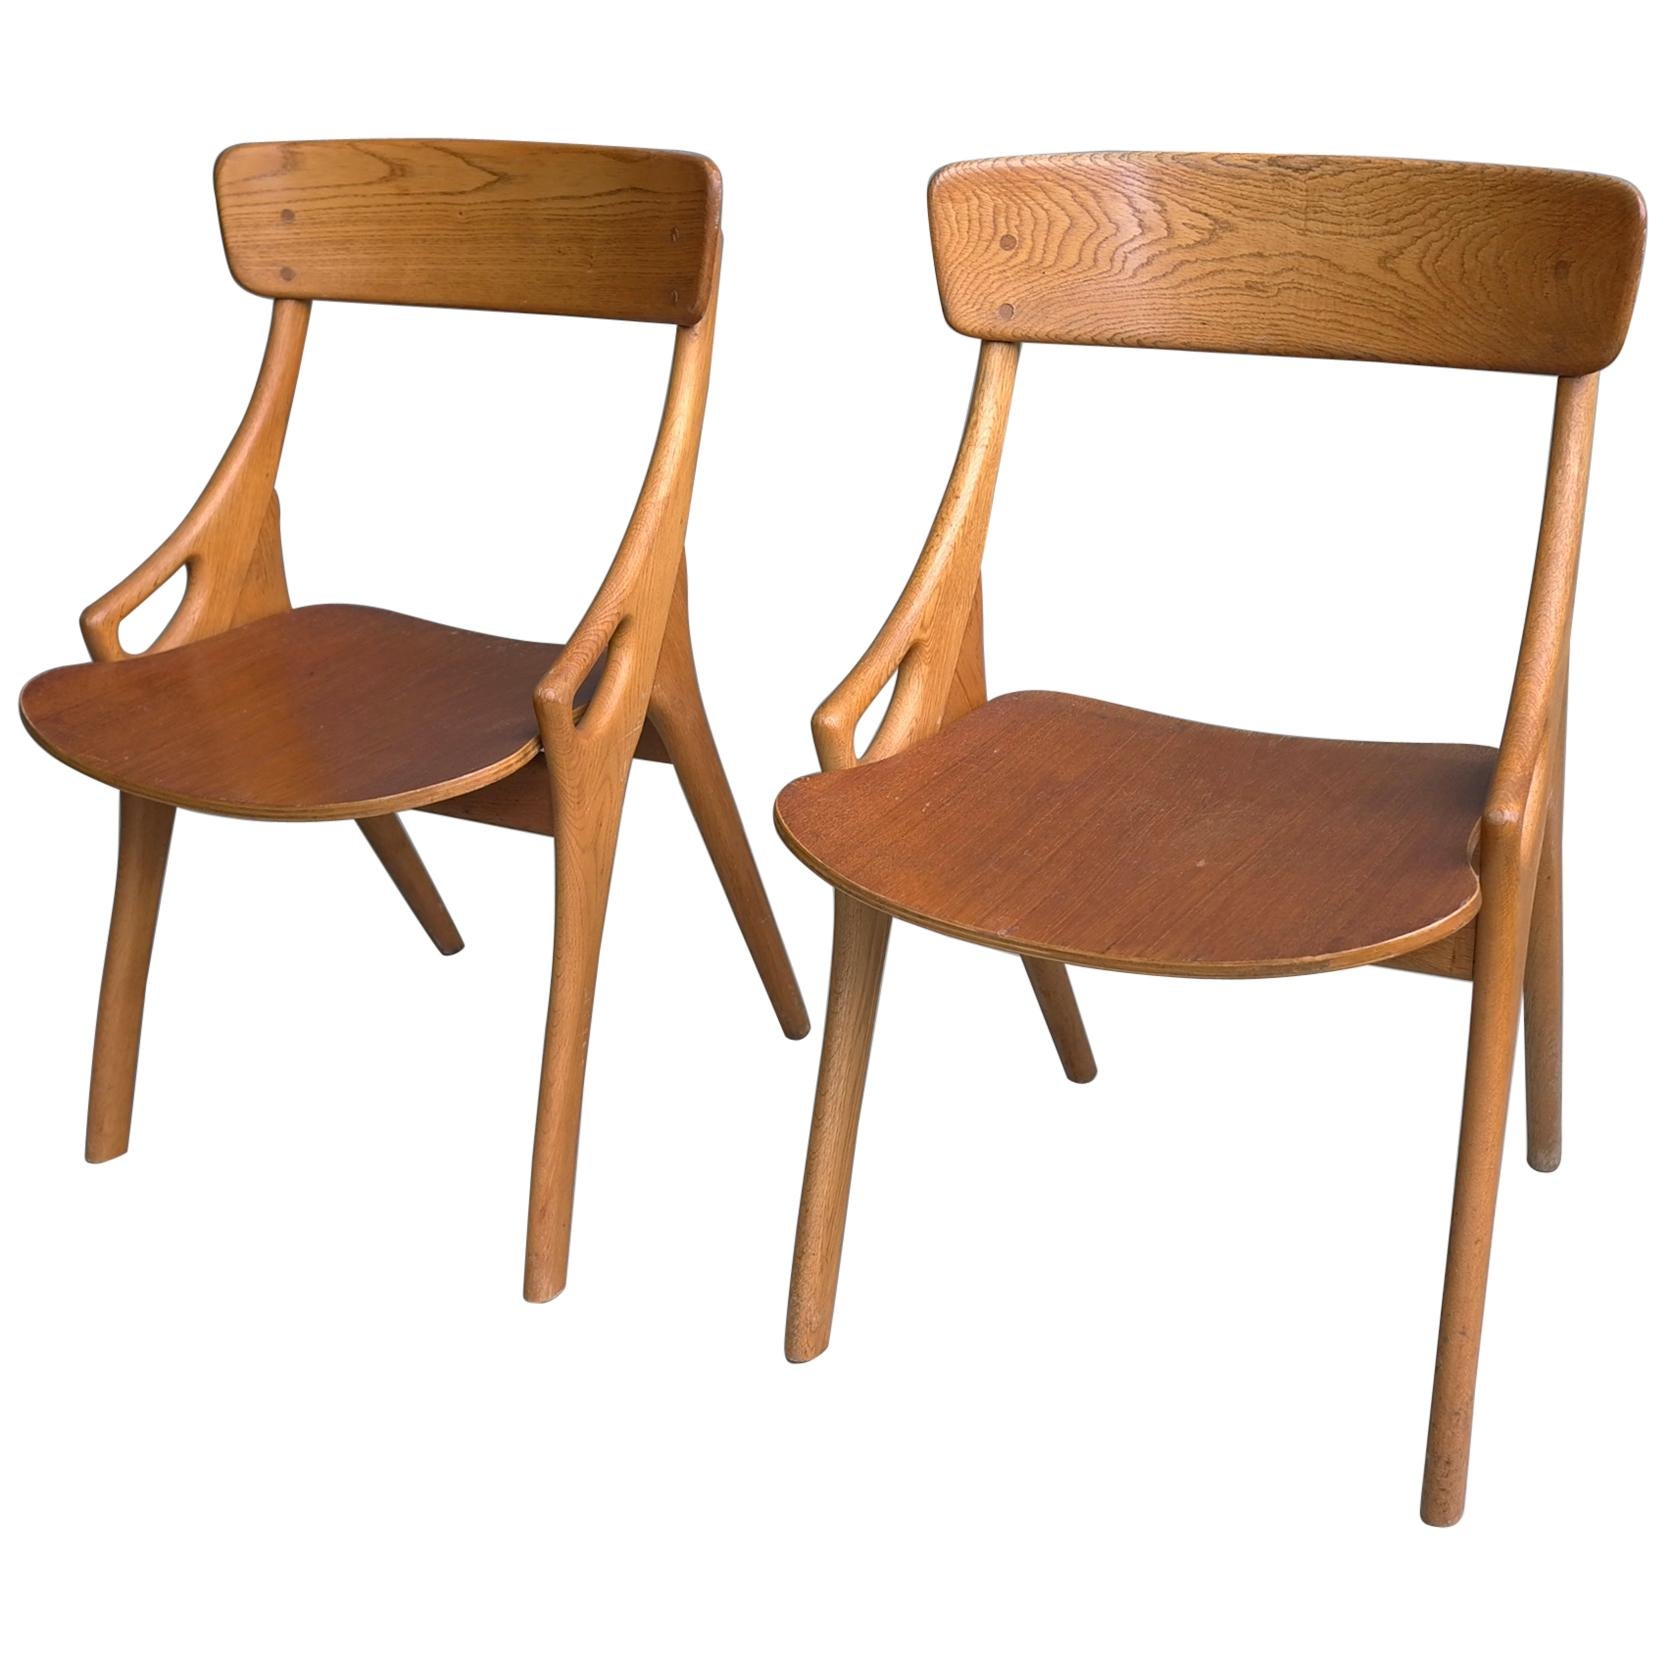 Pair of Oak Danish Dining or Side Chairs by Arne Hovmand-Olsen, Denmark, 1958